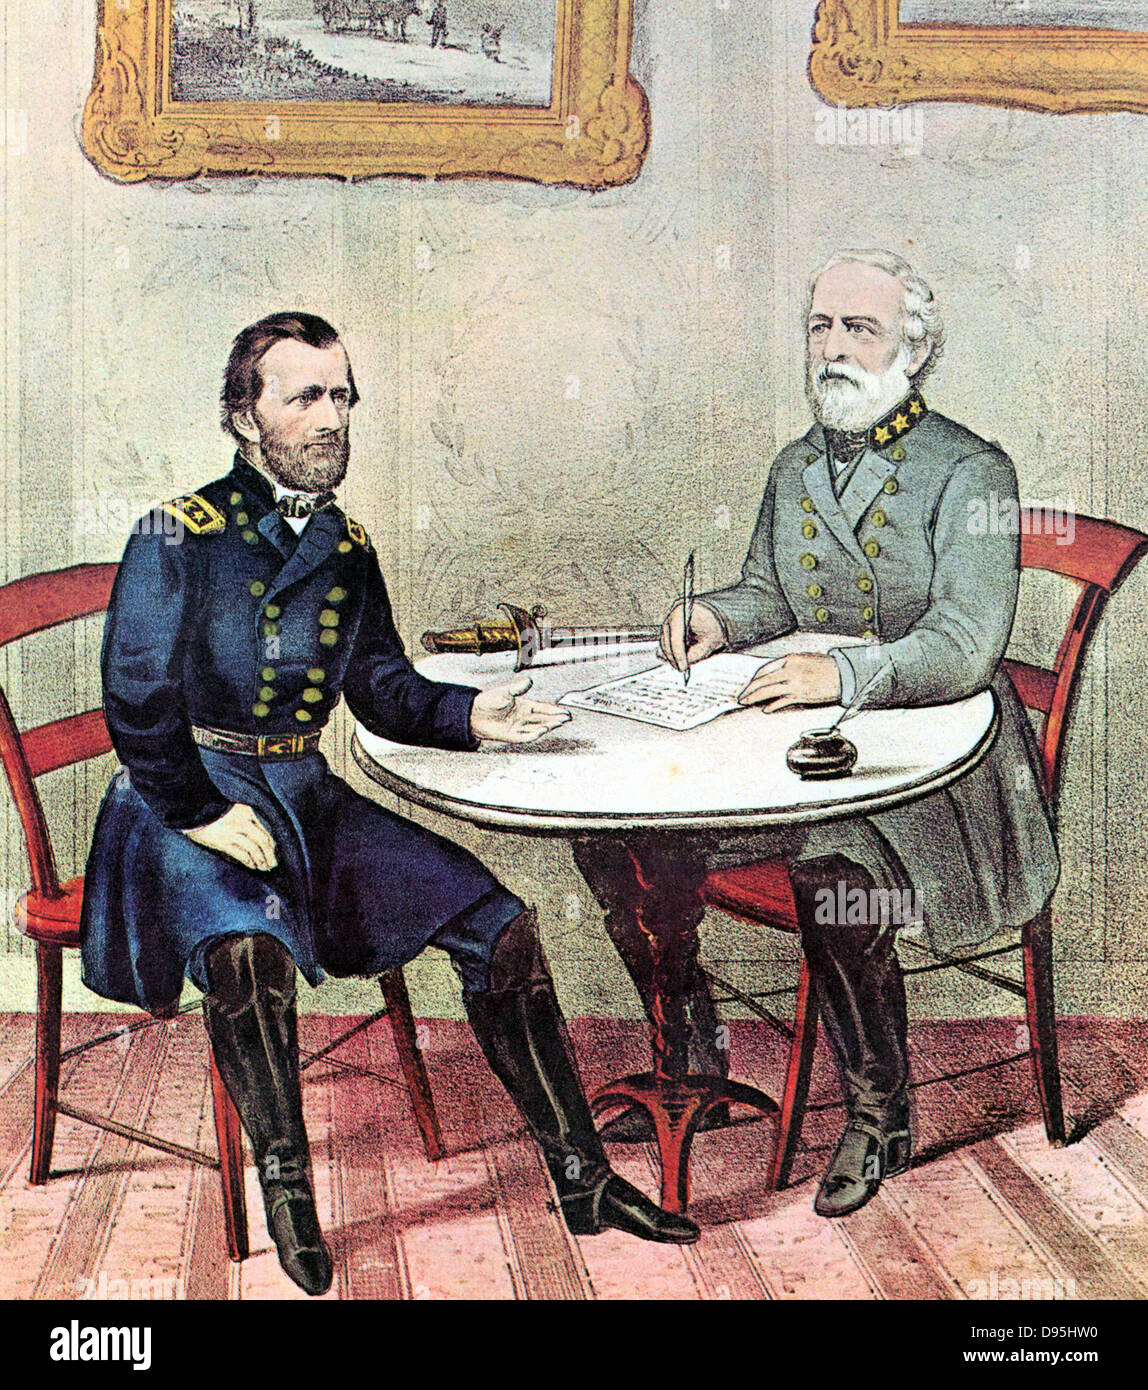 Amerikanische Bürgerkrieg: Die Generäle Grant (links) und Lee Tagung am Palmsonntag 1865 Arbeit, die Bedingungen für die Auslieferung von Lees Armee von Northern Virginia. Von einem Currier & Ives drucken. Stockfoto